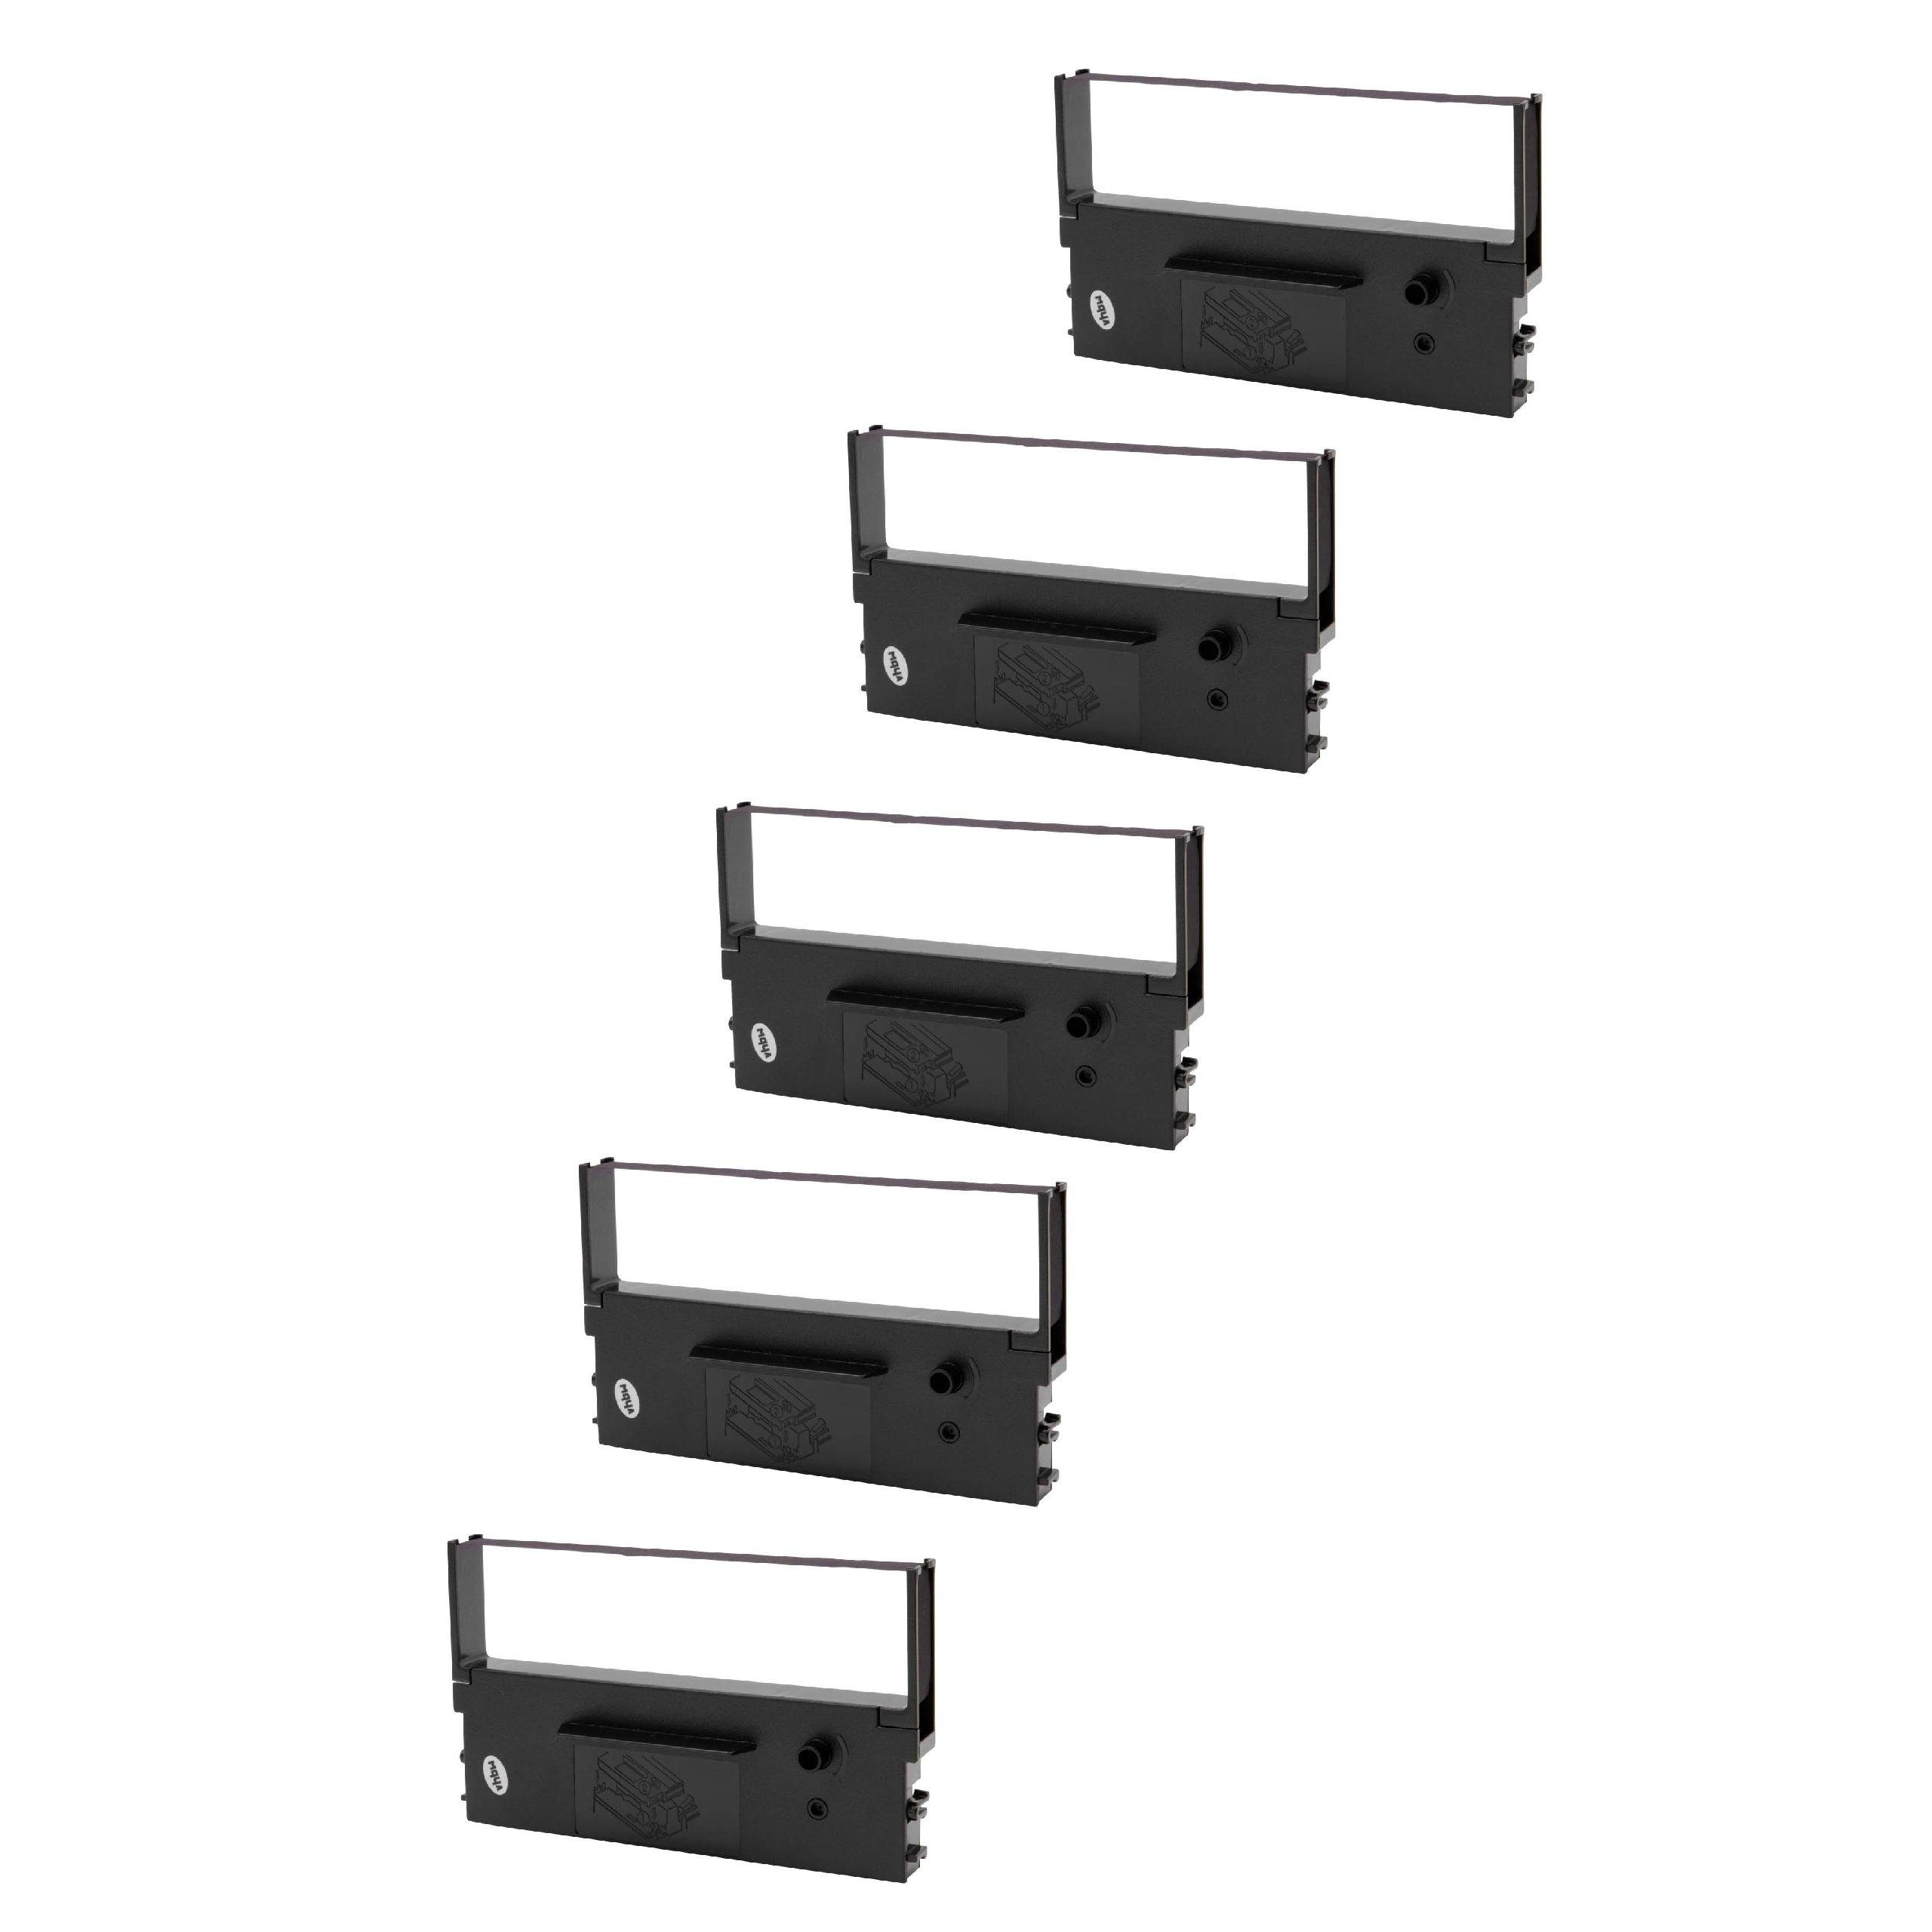 700 & Sharp Kopierer für Nadeldrucker vhbw UP passend Drucker Beschriftungsband